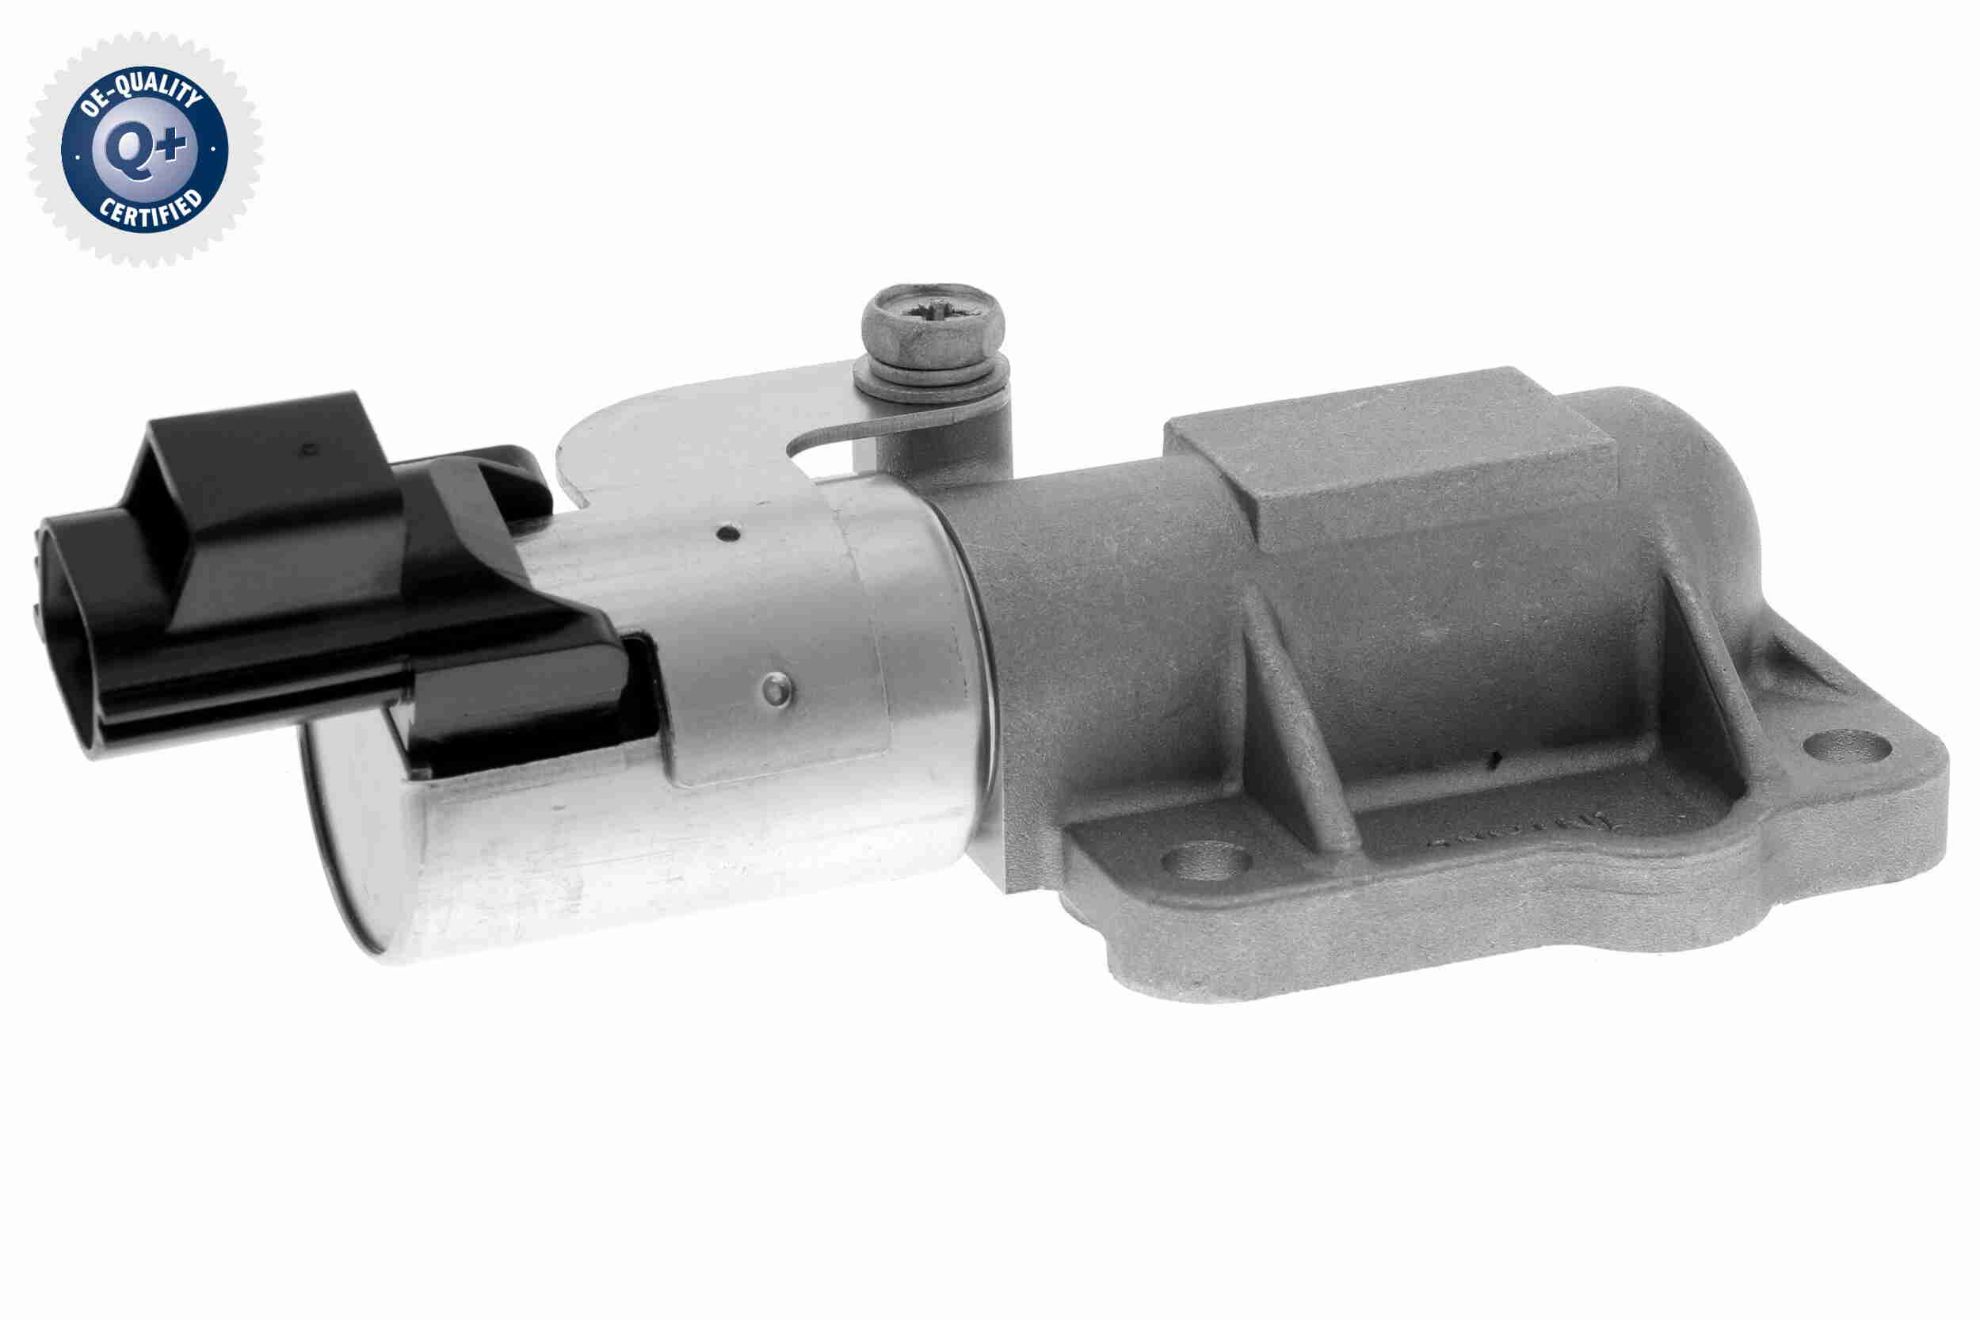 Obrázok Riadiaci ventil nastavenia vačkového hriadeľa VAICO Q+, original equipment manufacturer quality V950501